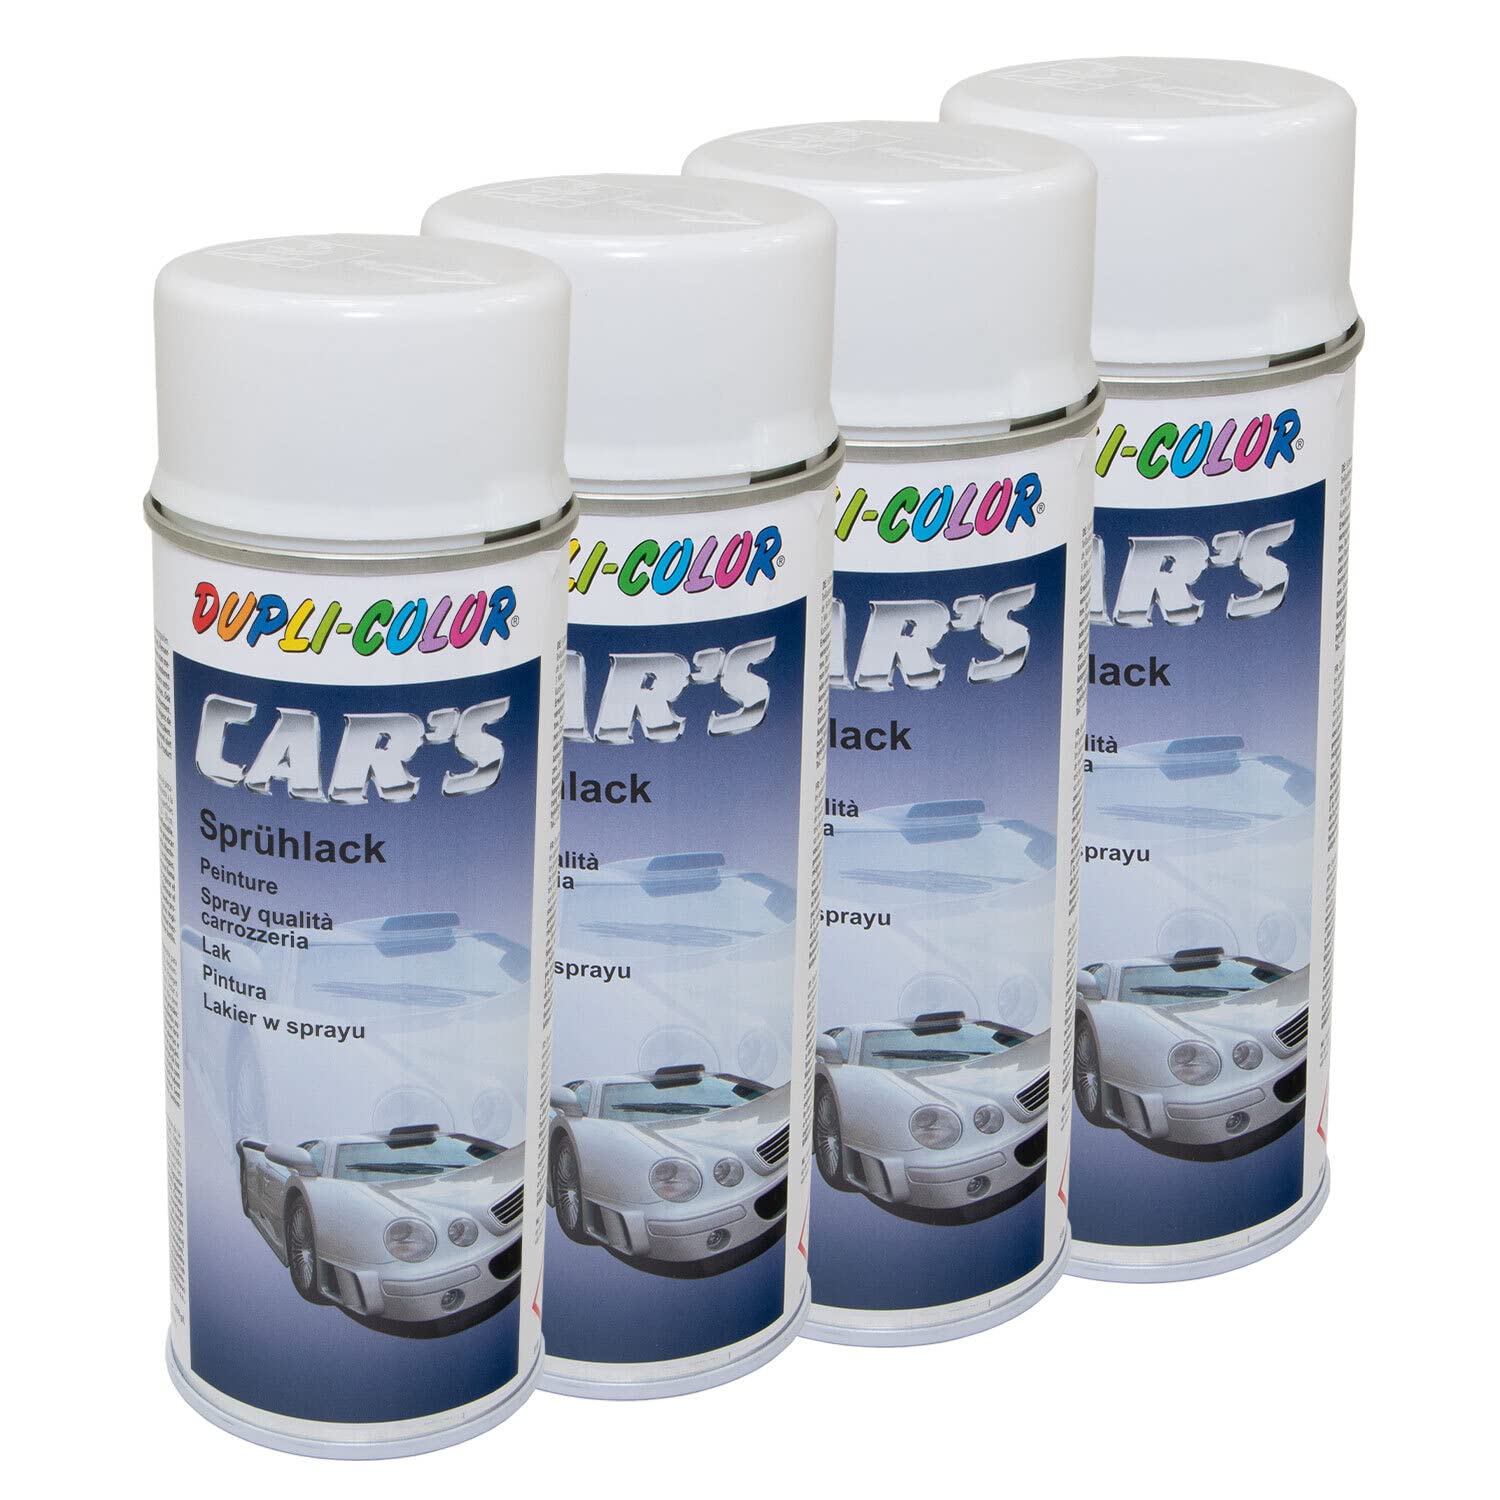 Lackspray Spraydose Sprühlack Cars Dupli Color 385896 weiss glänzend 4 X 400 ml von DUPLI_bundle